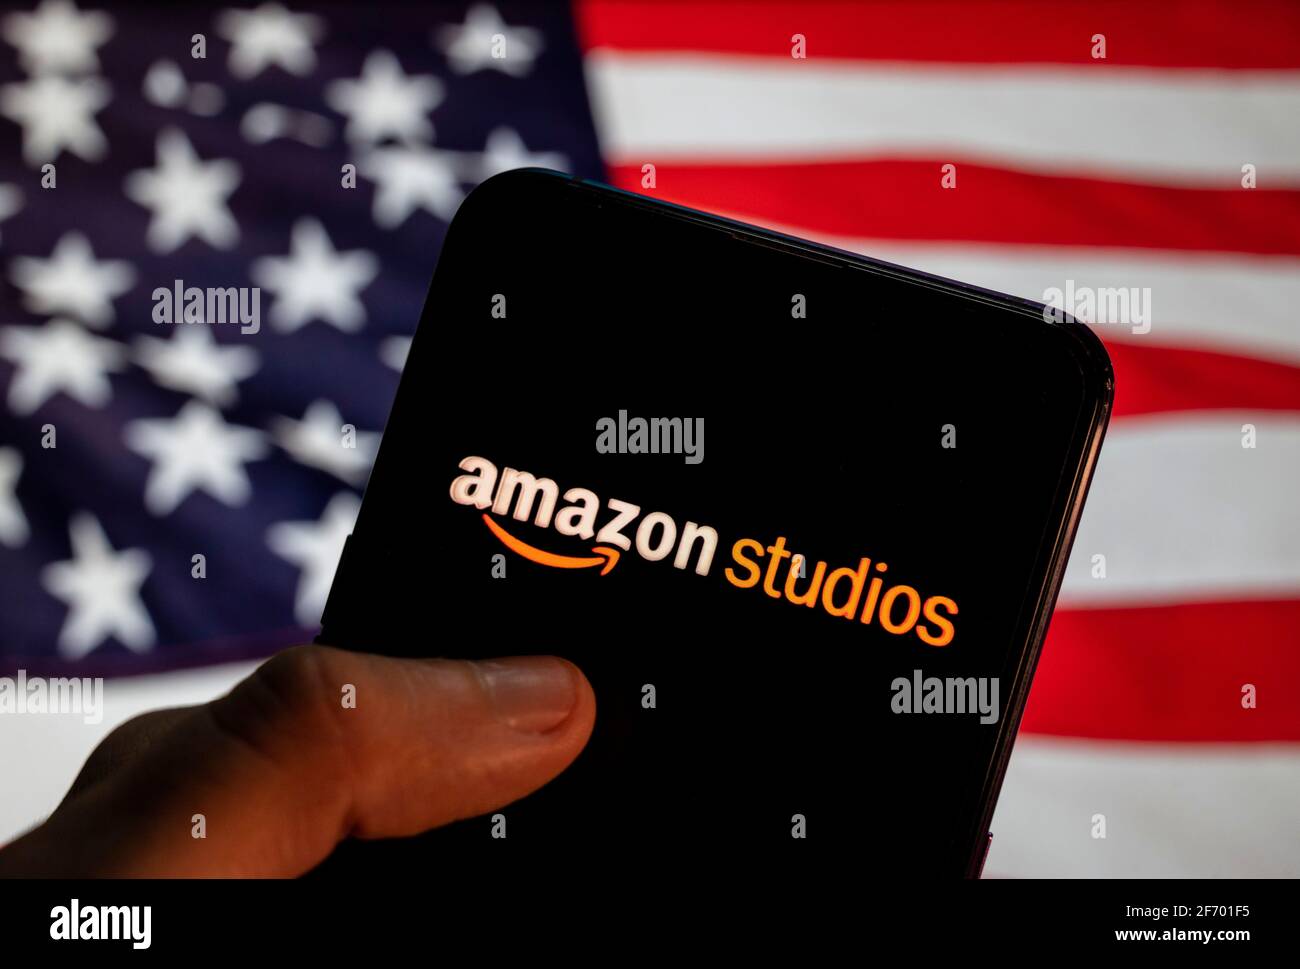 Cina. 27 Marzo 2021. In questa illustrazione fotografica il distributore  americano di produzione televisiva di proprietà di Amazon, il logo Amazon  Studios visto su uno smartphone con una bandiera degli Stati Uniti